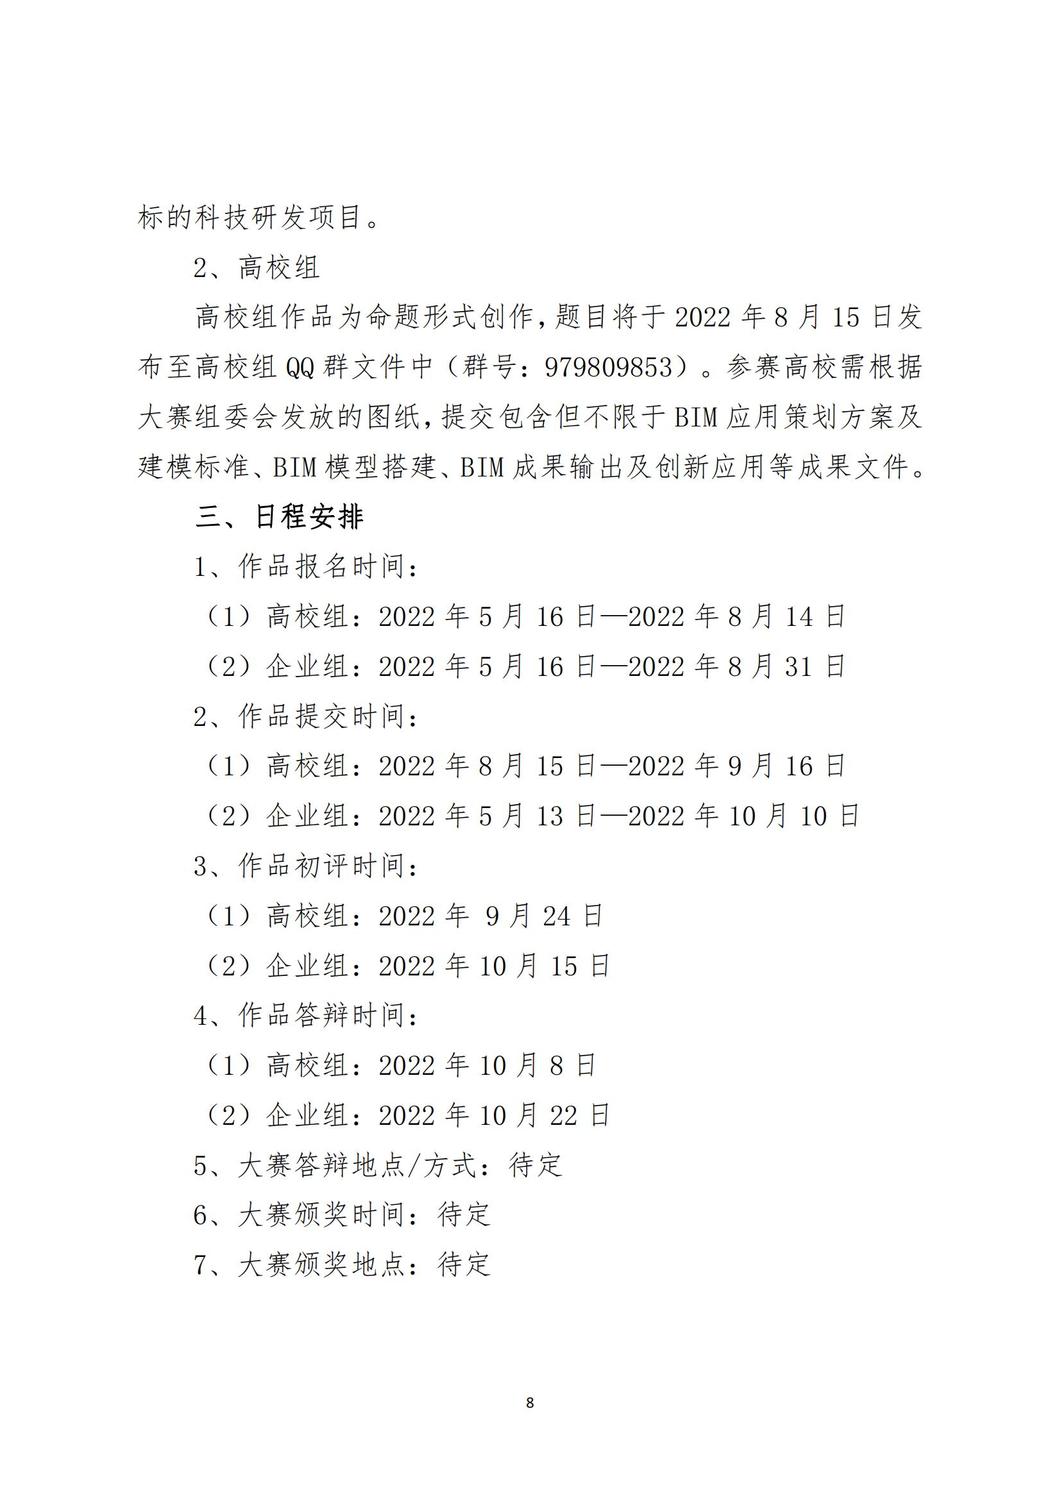 关于举办甘肃省第五届BIM技术应用大赛的通知_07.jpg